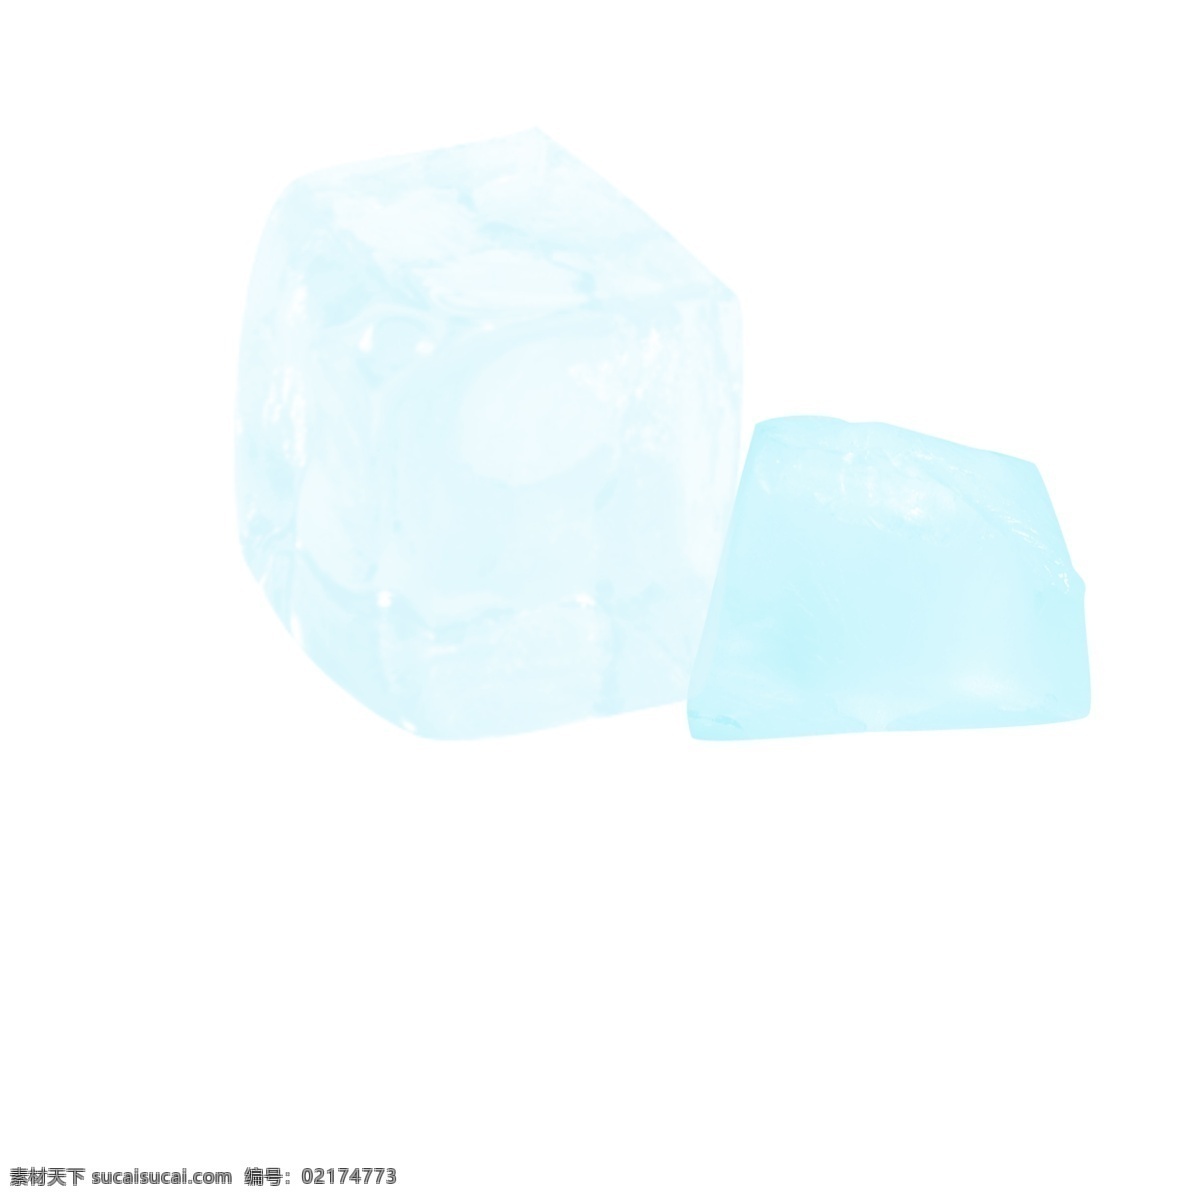 几何 冰晶 冰块 元素 冰 几何冰晶 蓝色冰块 几何冰晶冰块